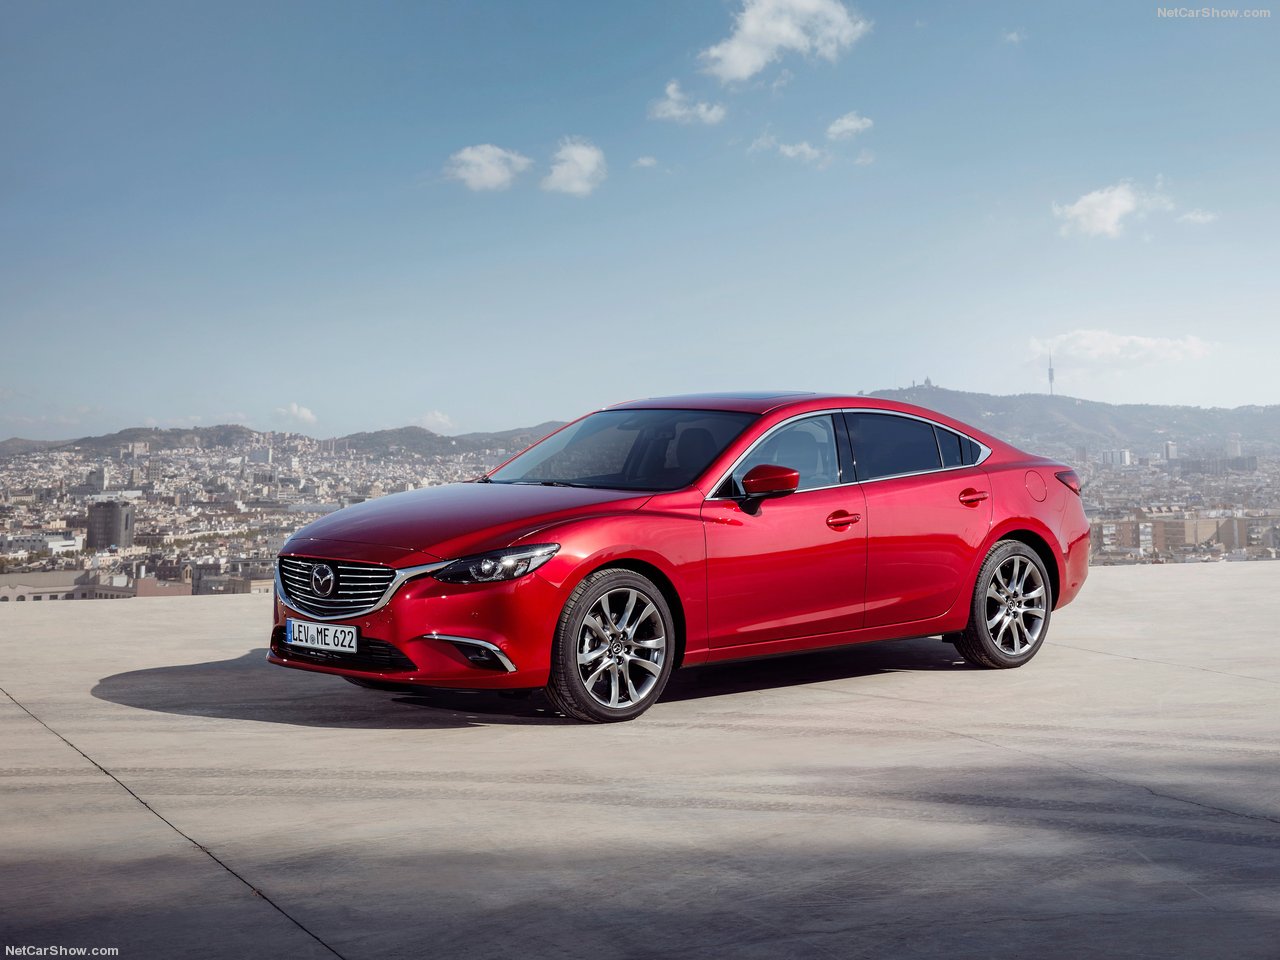 Mazda 6 2018: комплектации, цены и фото